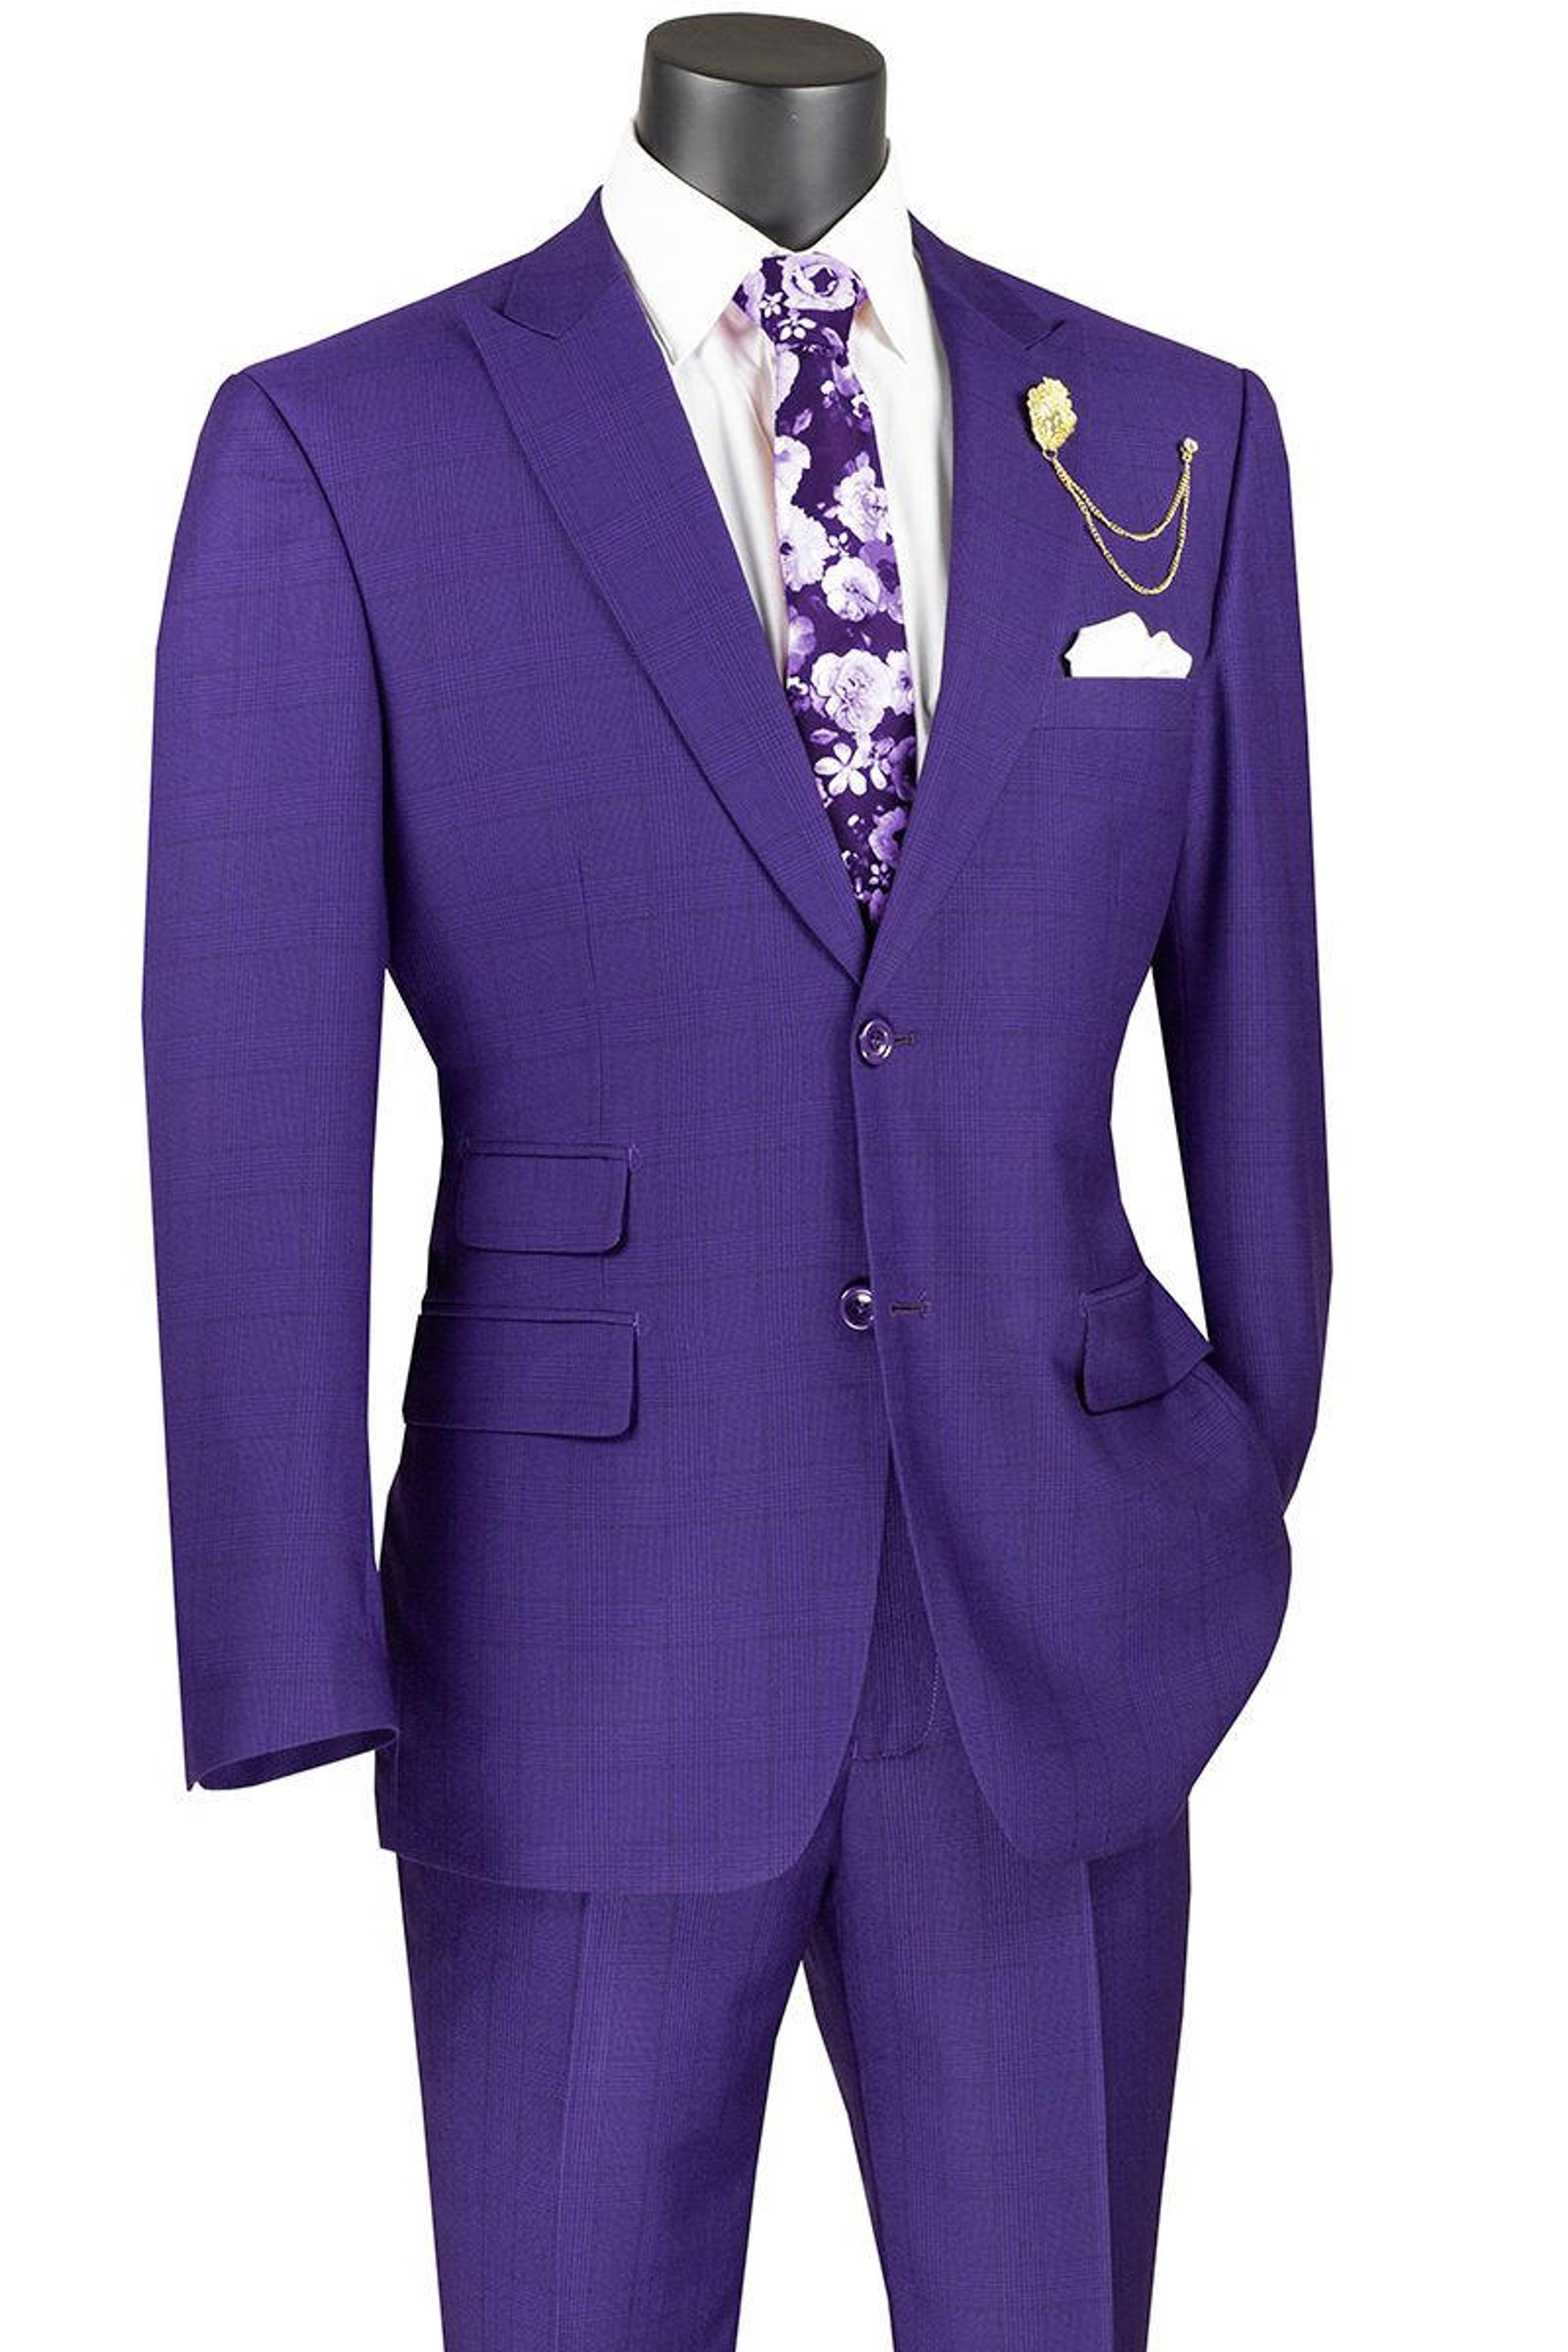 Mens Purple Suit Purple Suits For Men